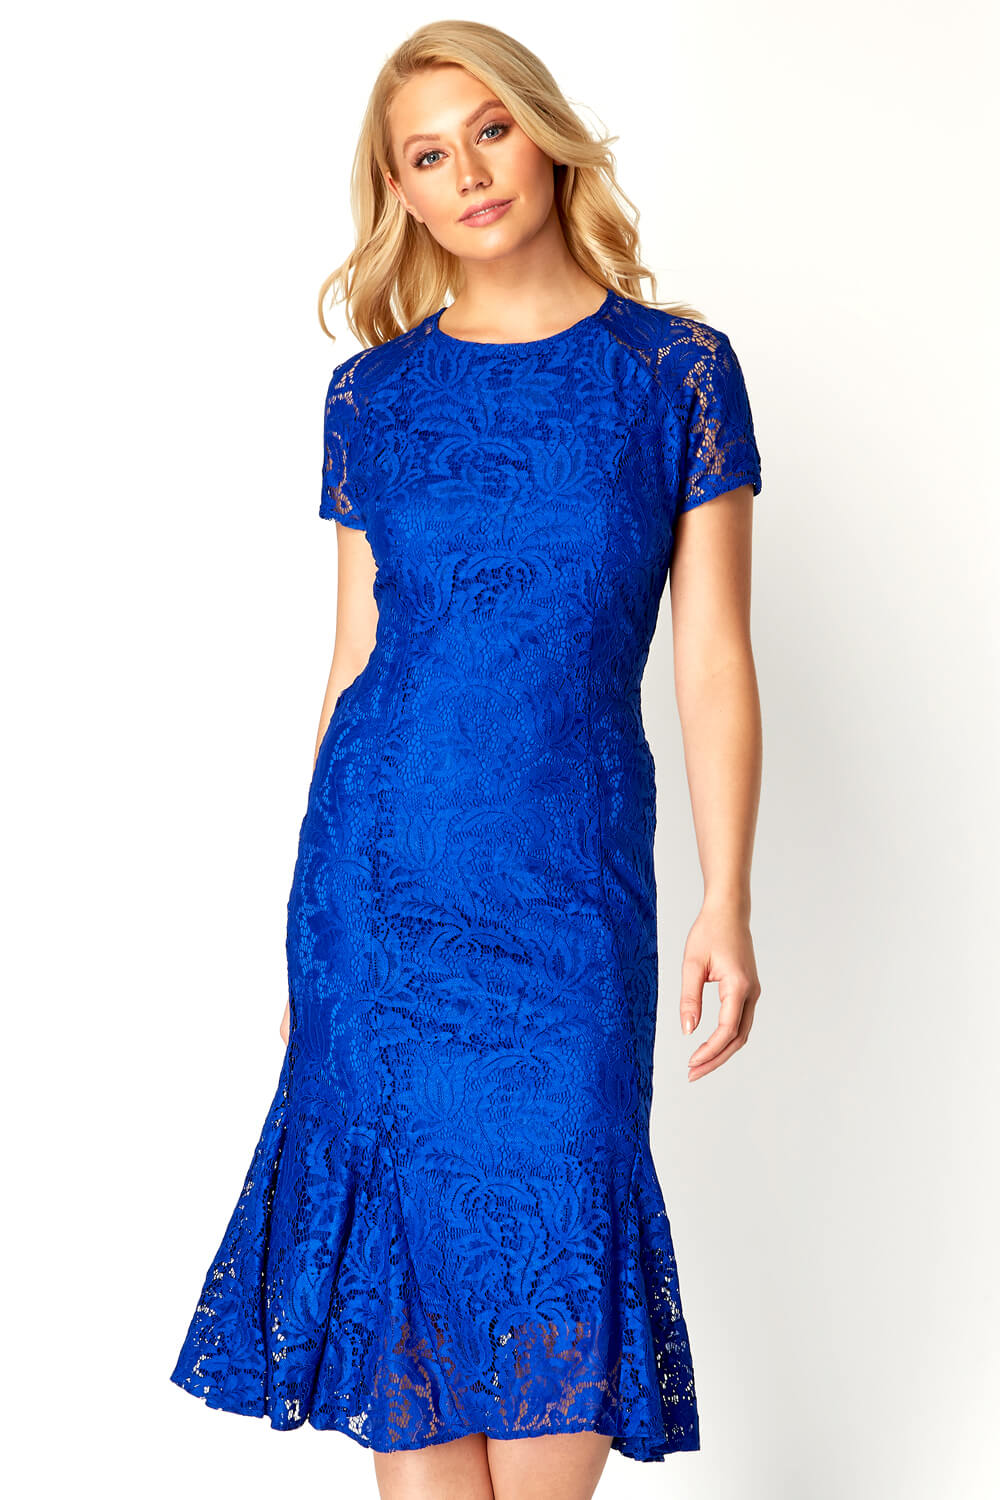 royal blue midi dress uk